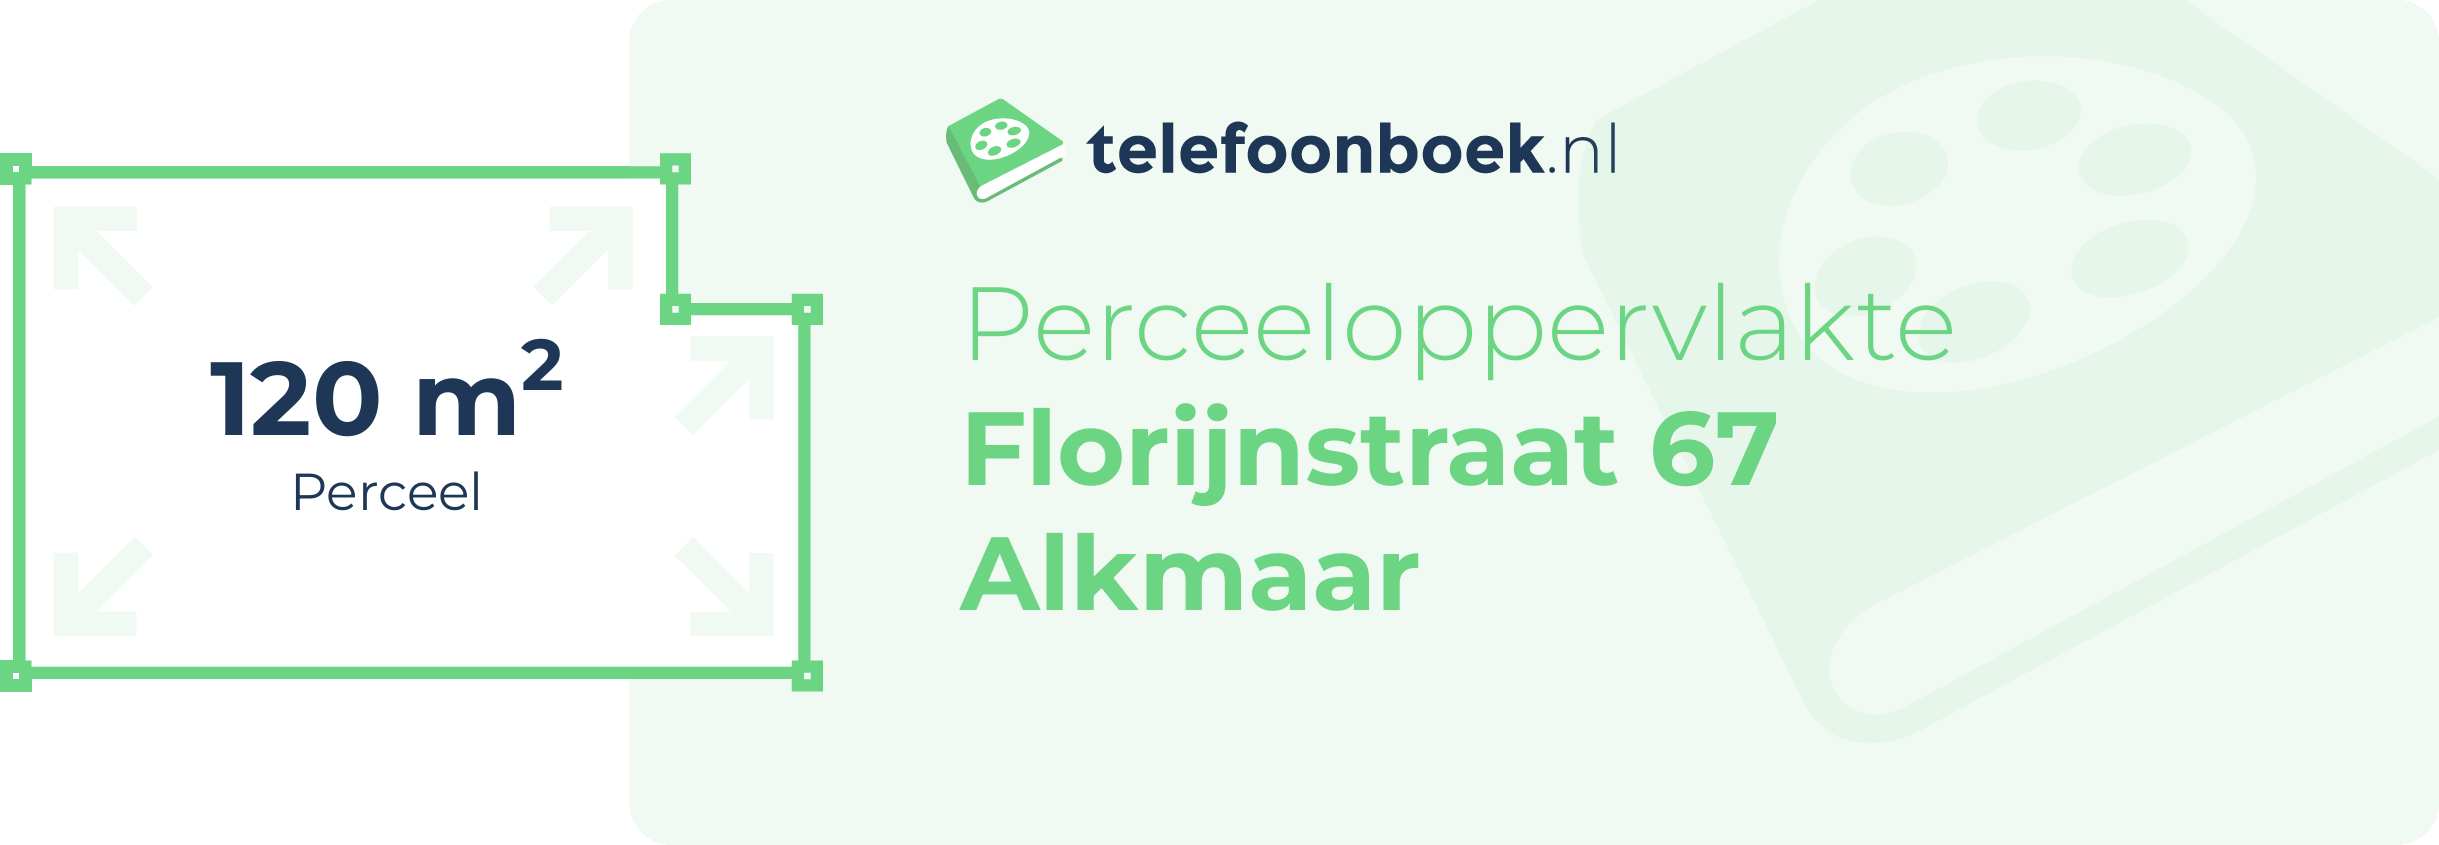 Perceeloppervlakte Florijnstraat 67 Alkmaar